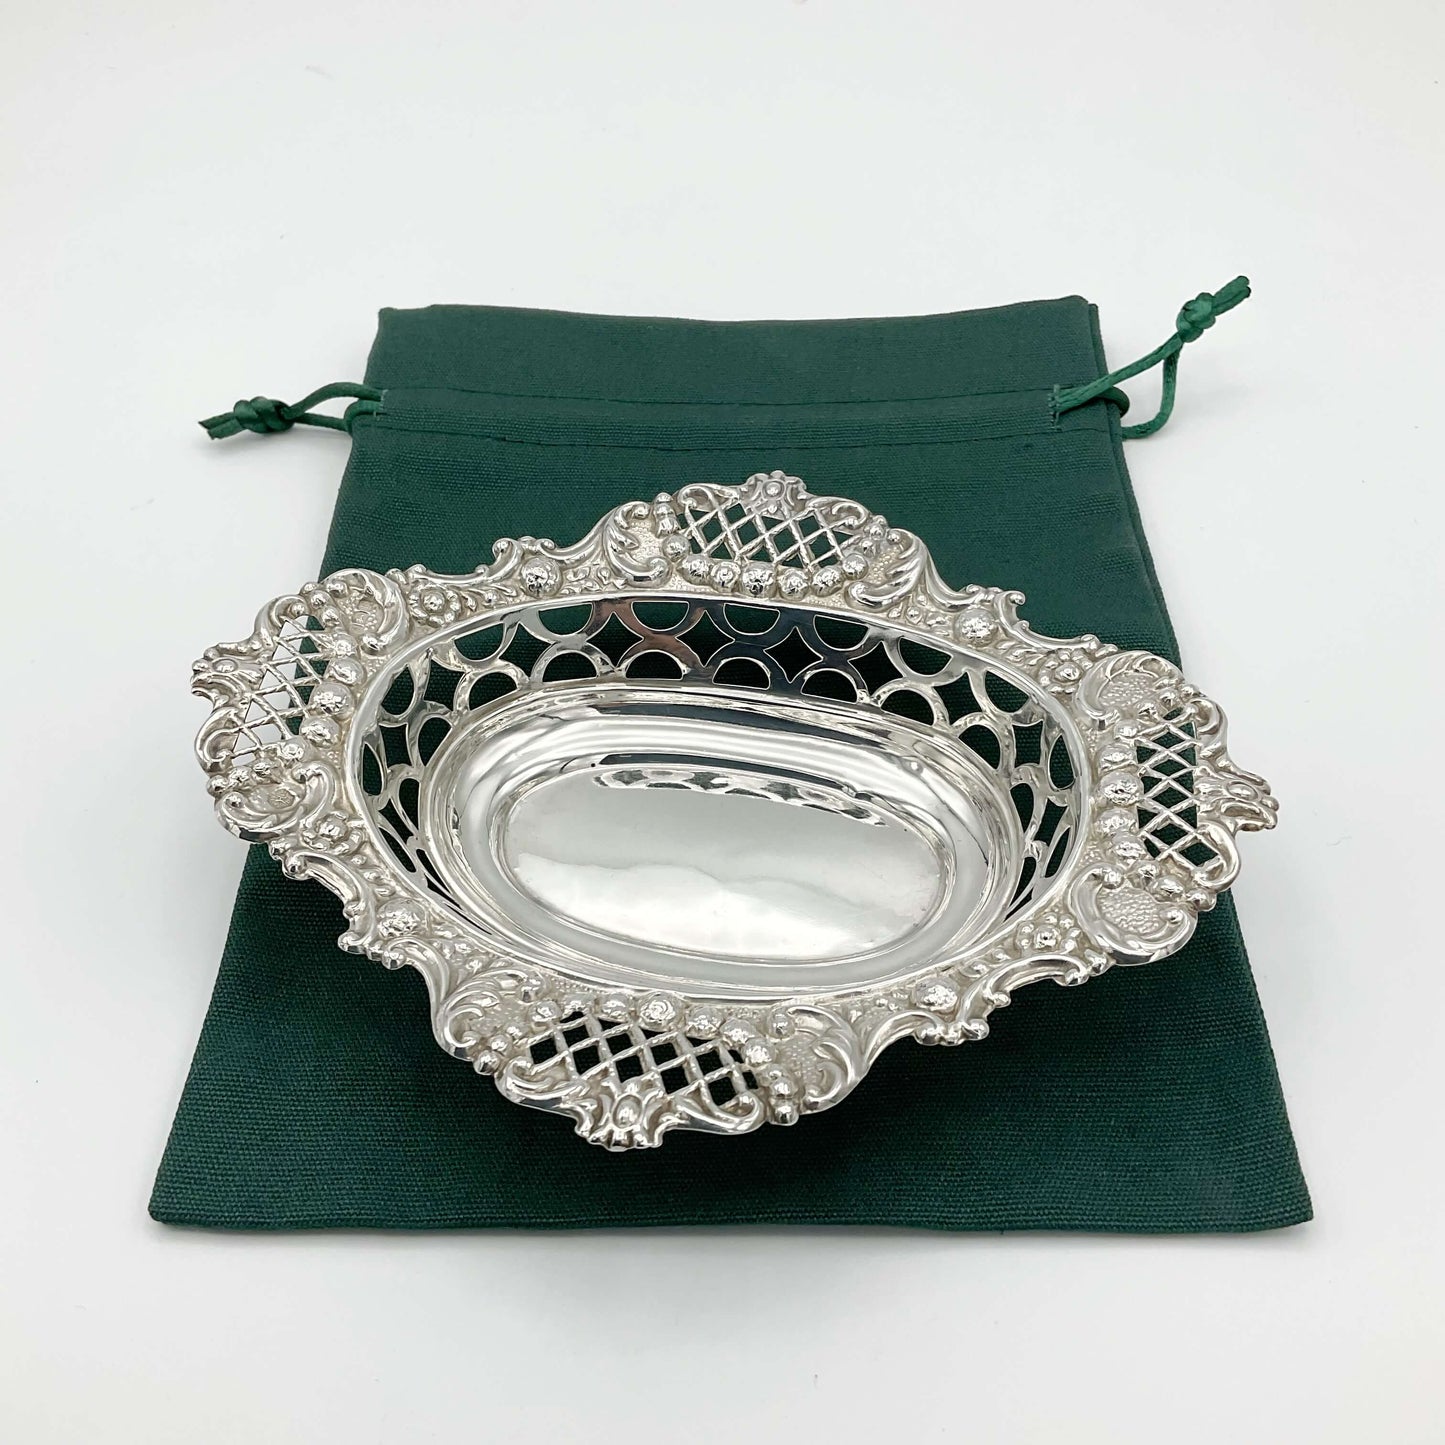 Lovely ornate silver pierced bowl on green gift bag